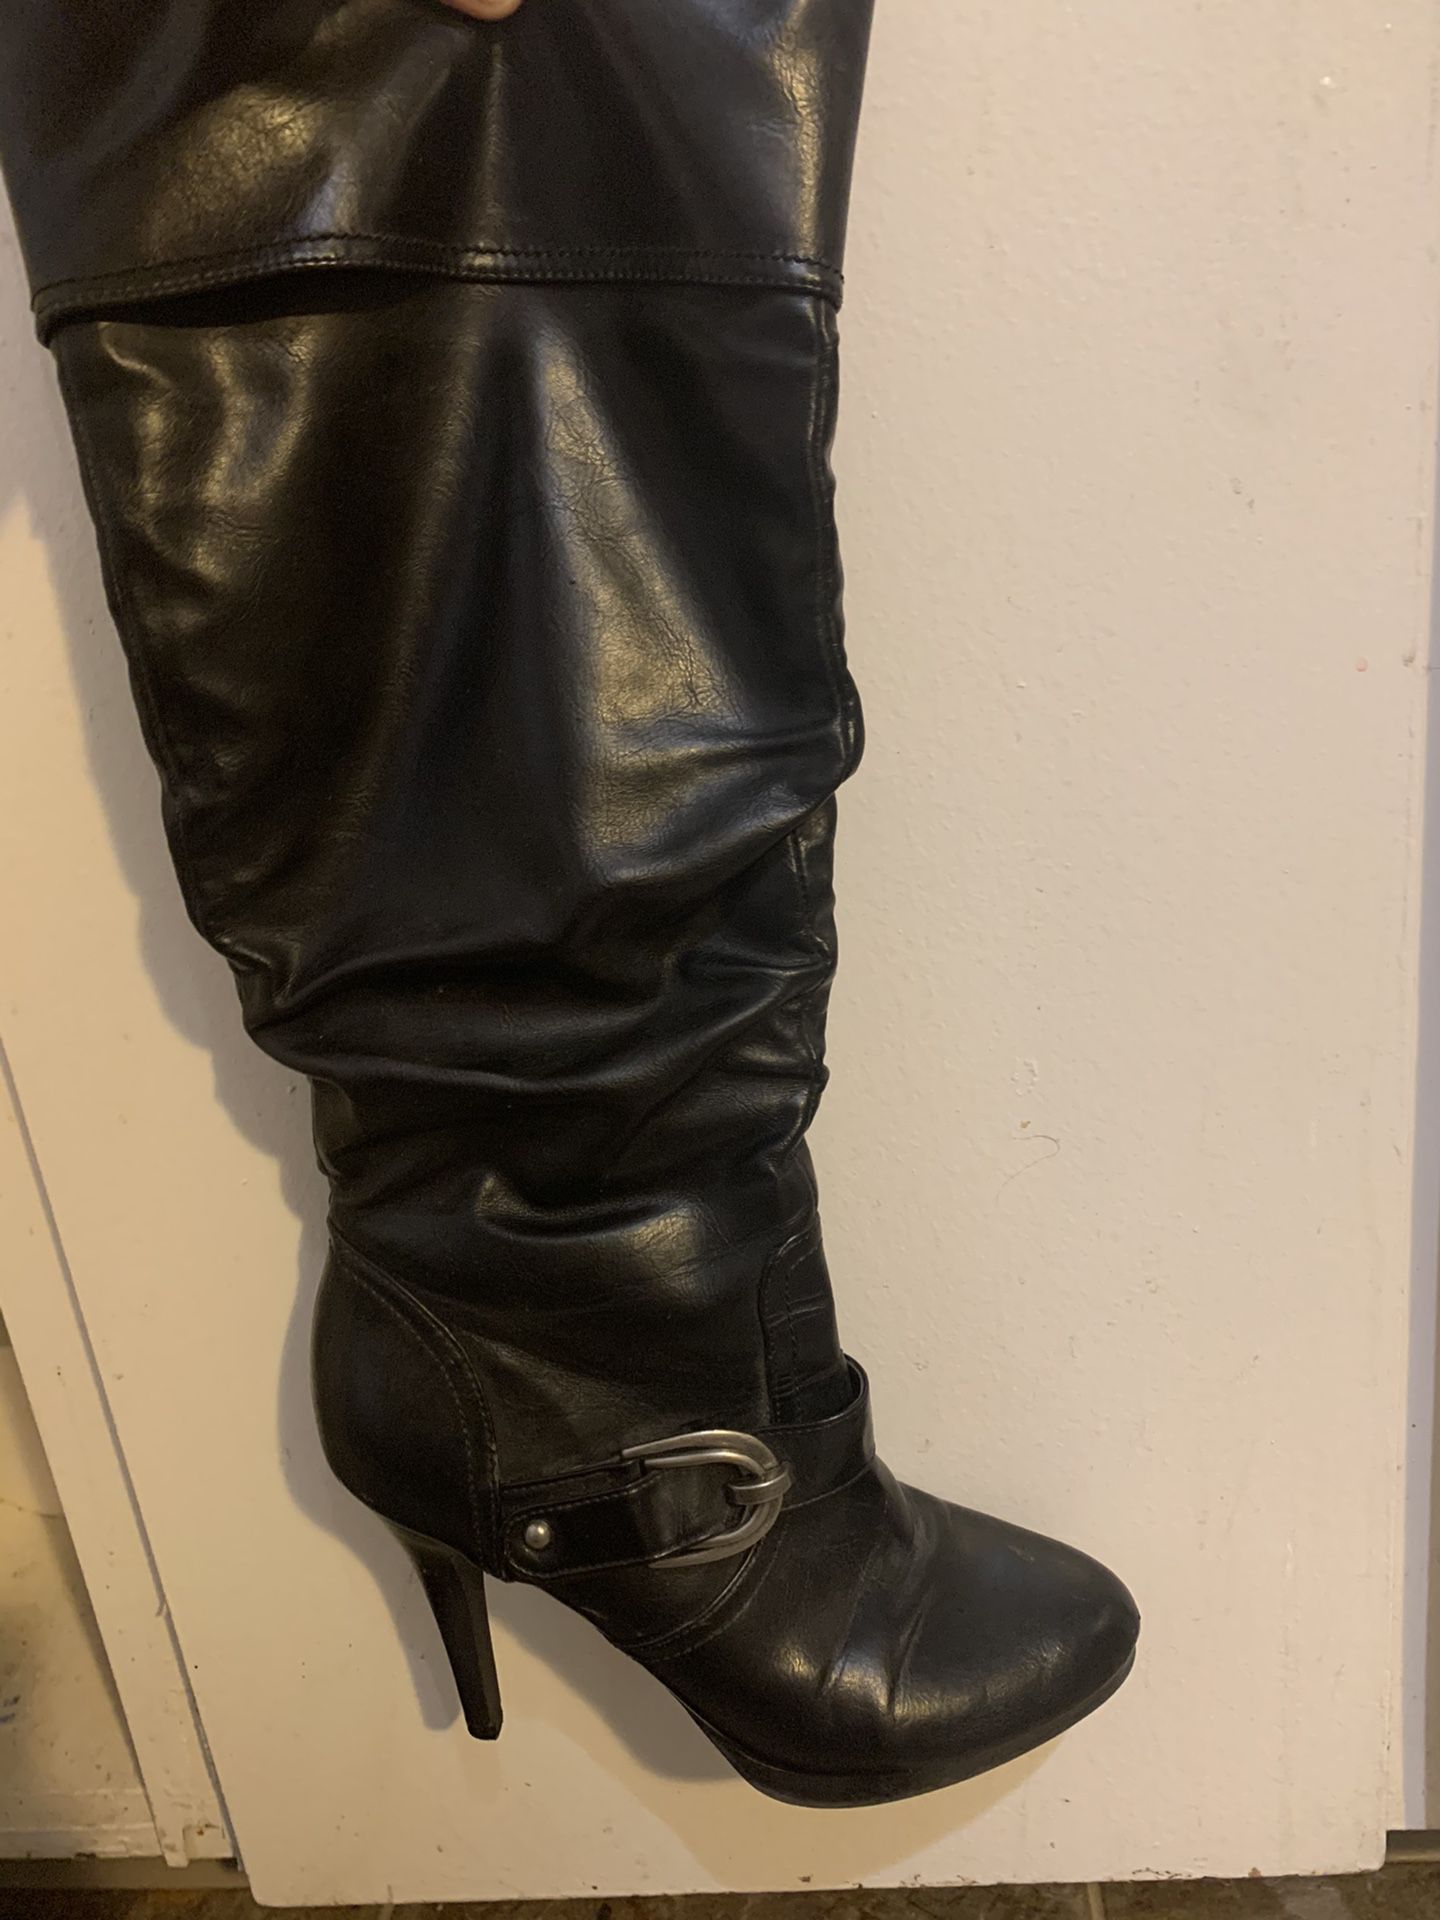 Tall black zip up boot heels.